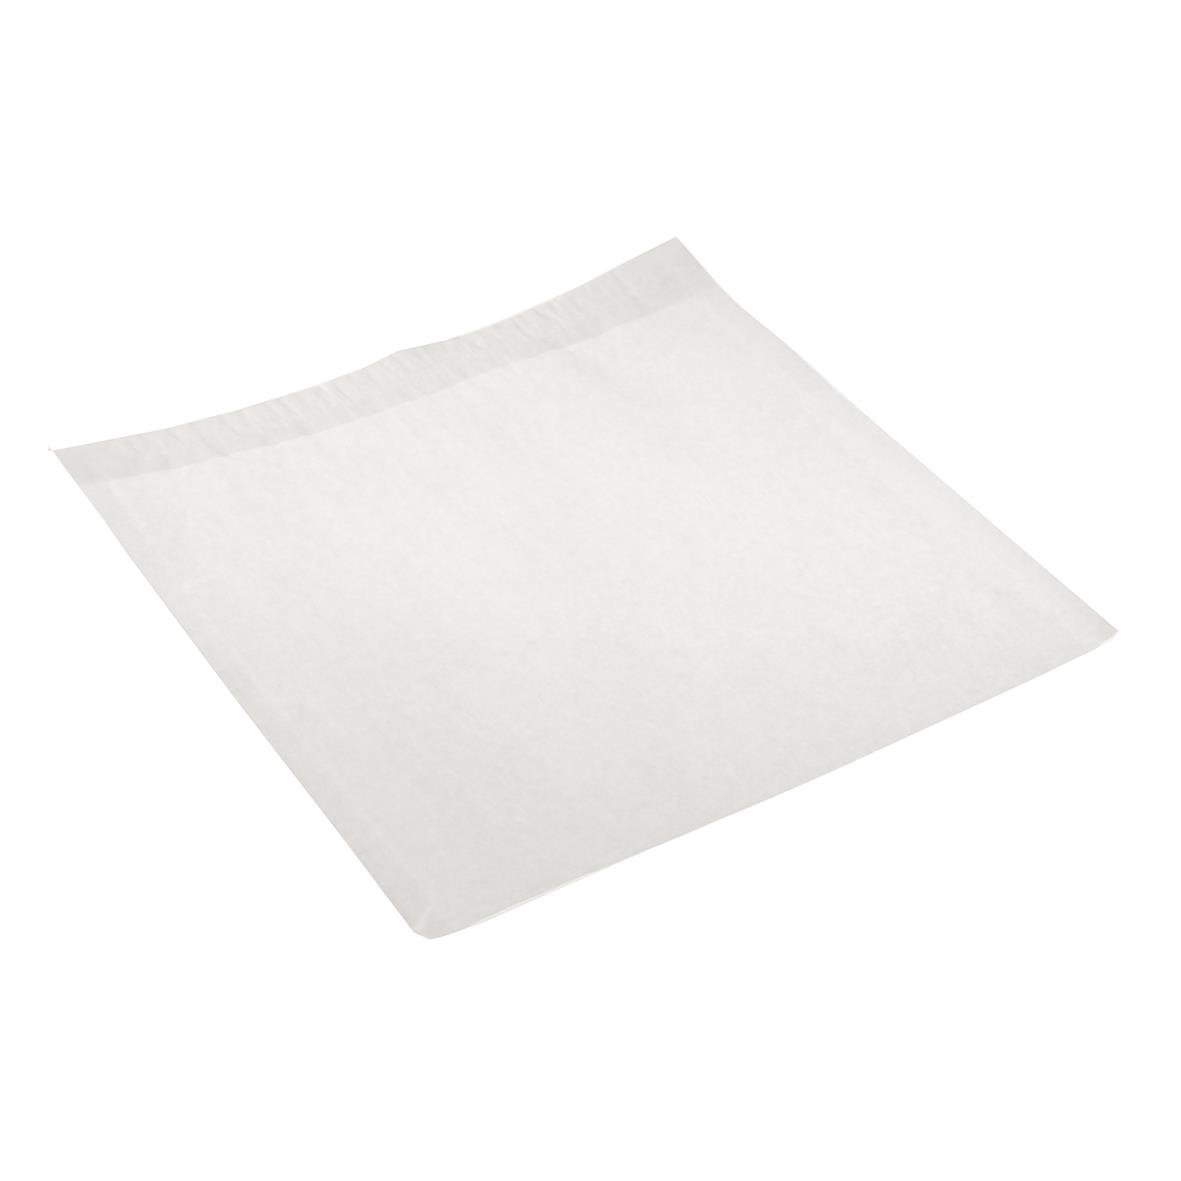 Papperspåse Smörgåspåse vit 250x250 mm 49050010